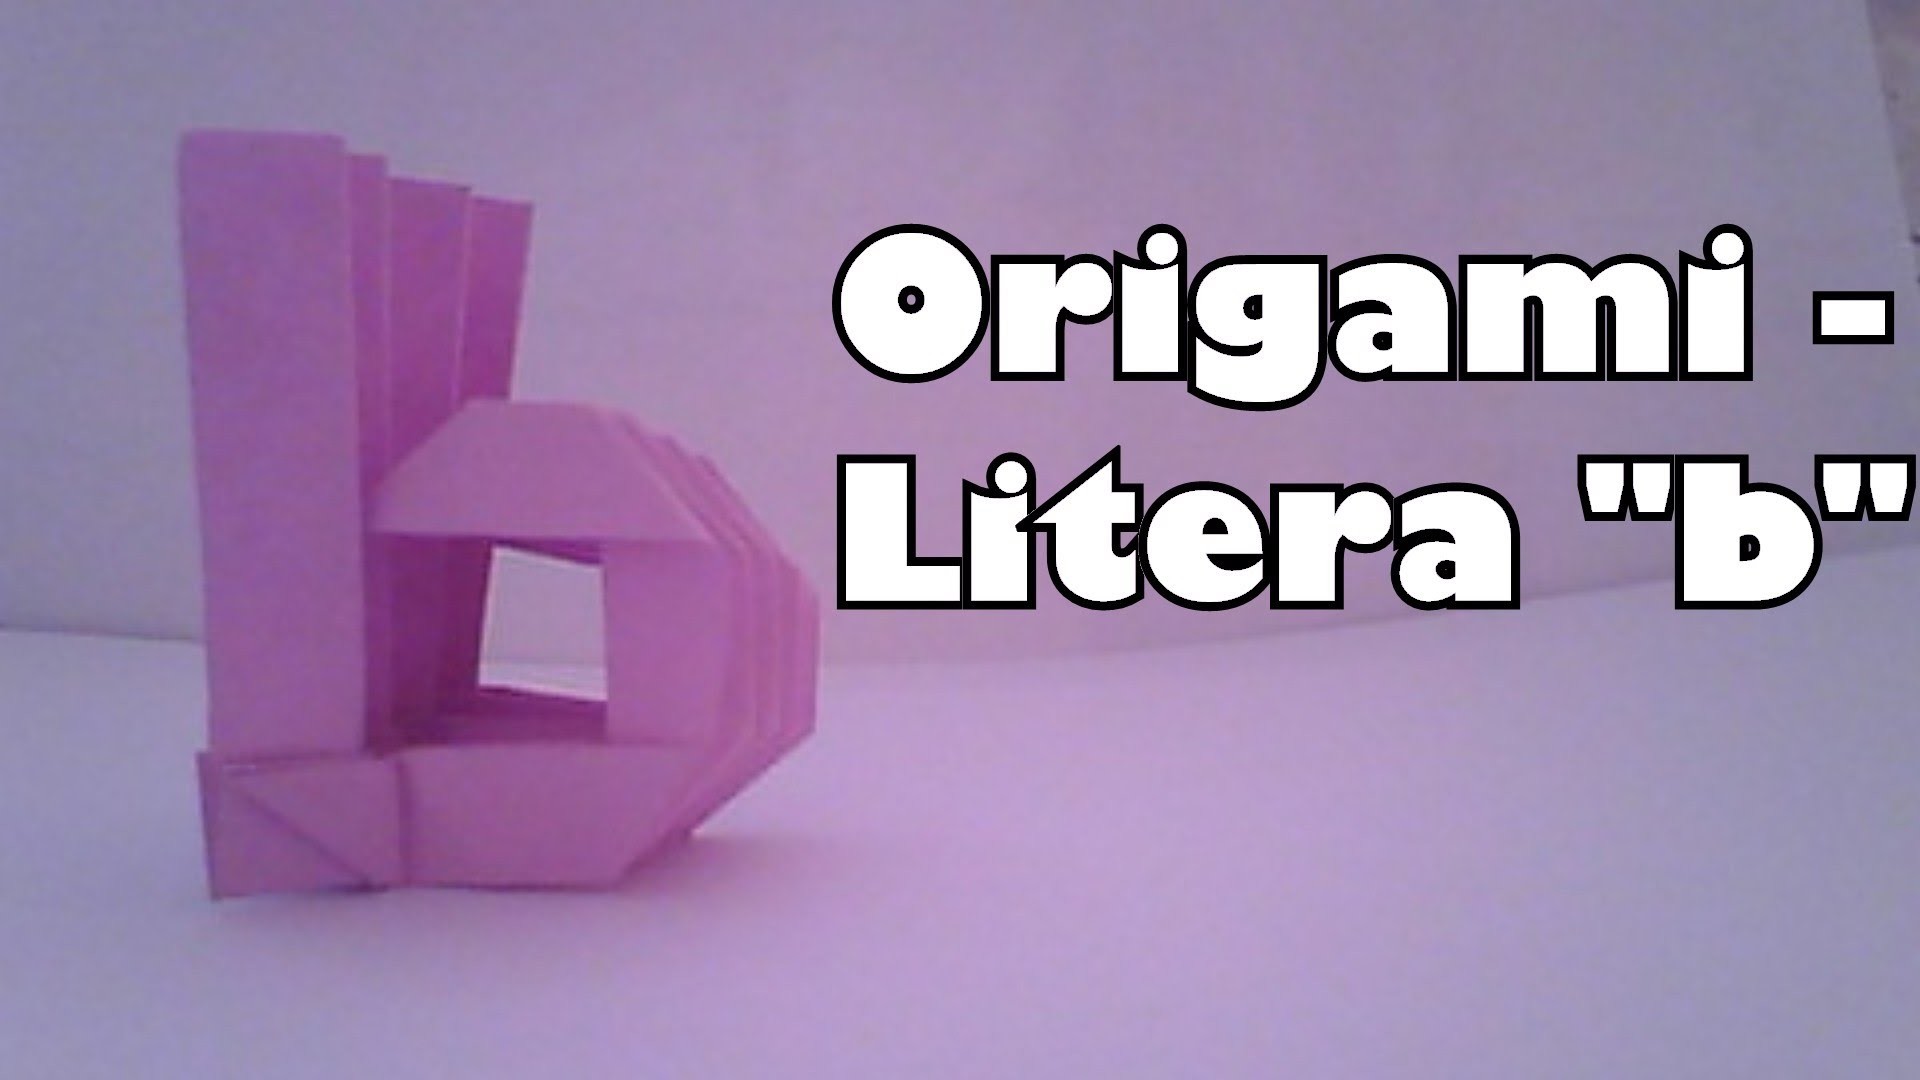 Origami - Litera "b"